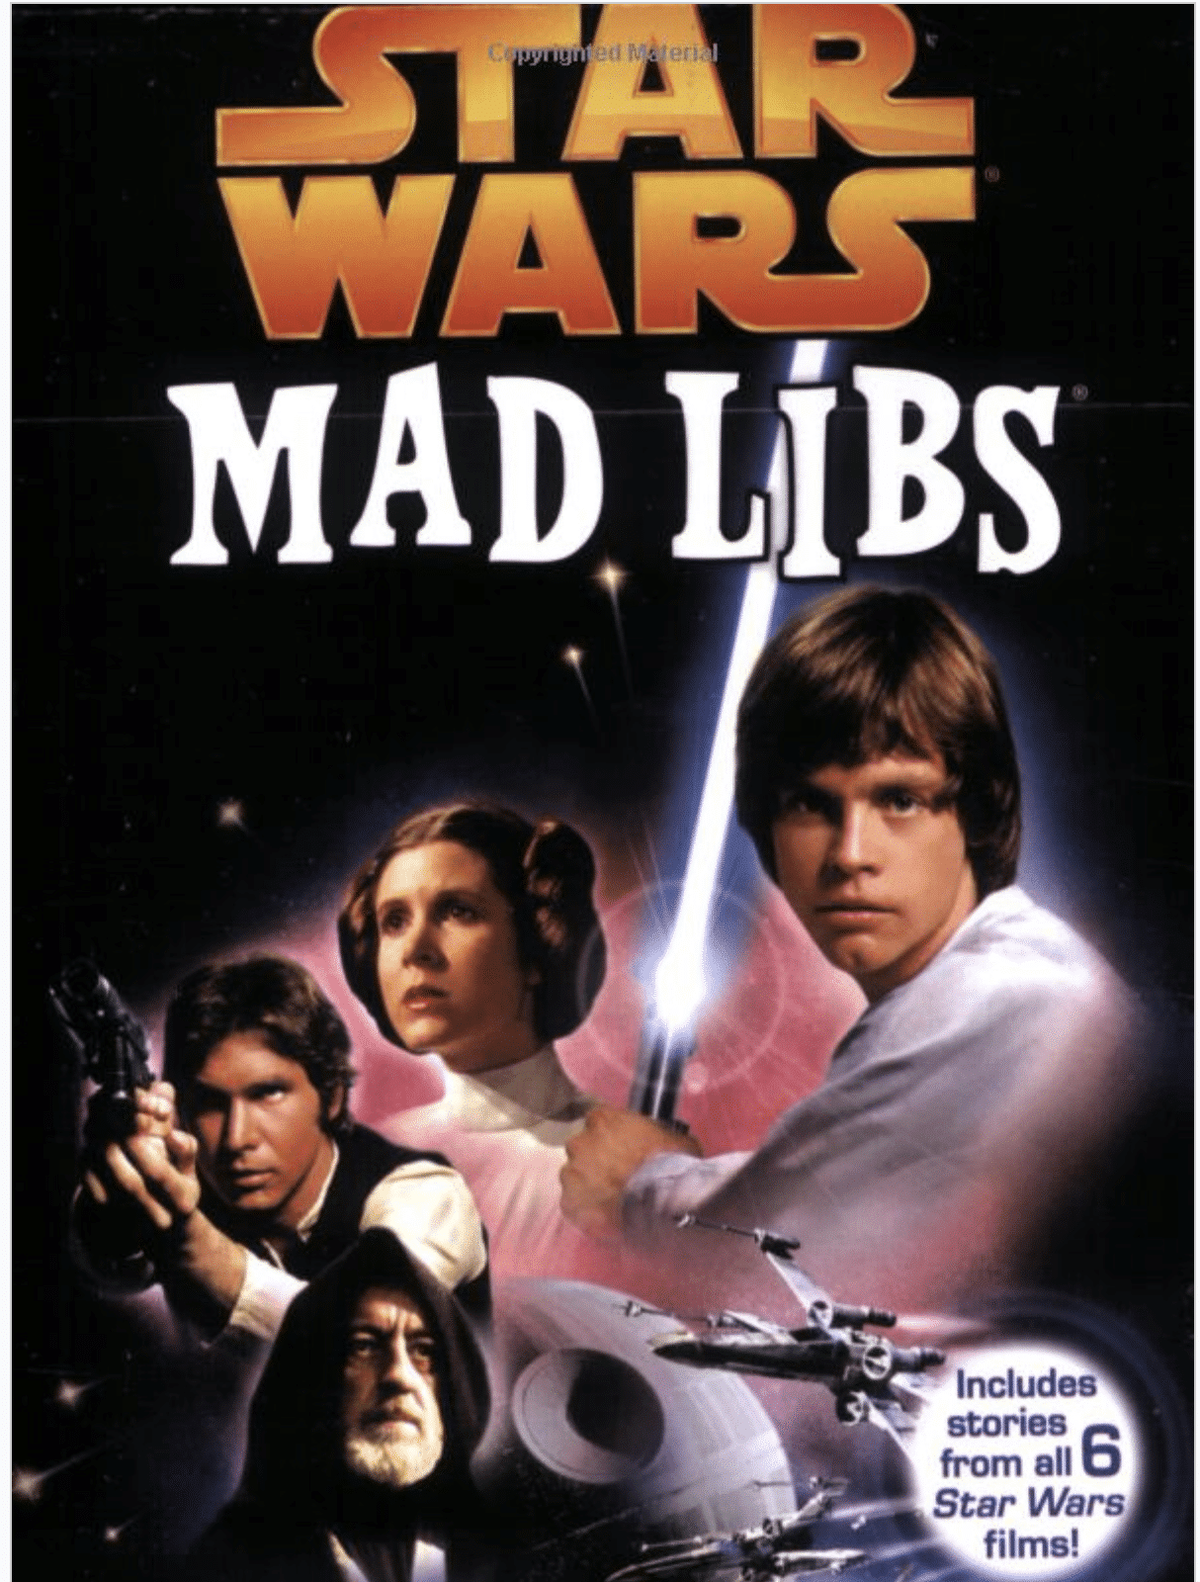 Star Wars Mad Libs sú zábava pre deti aj dospelých